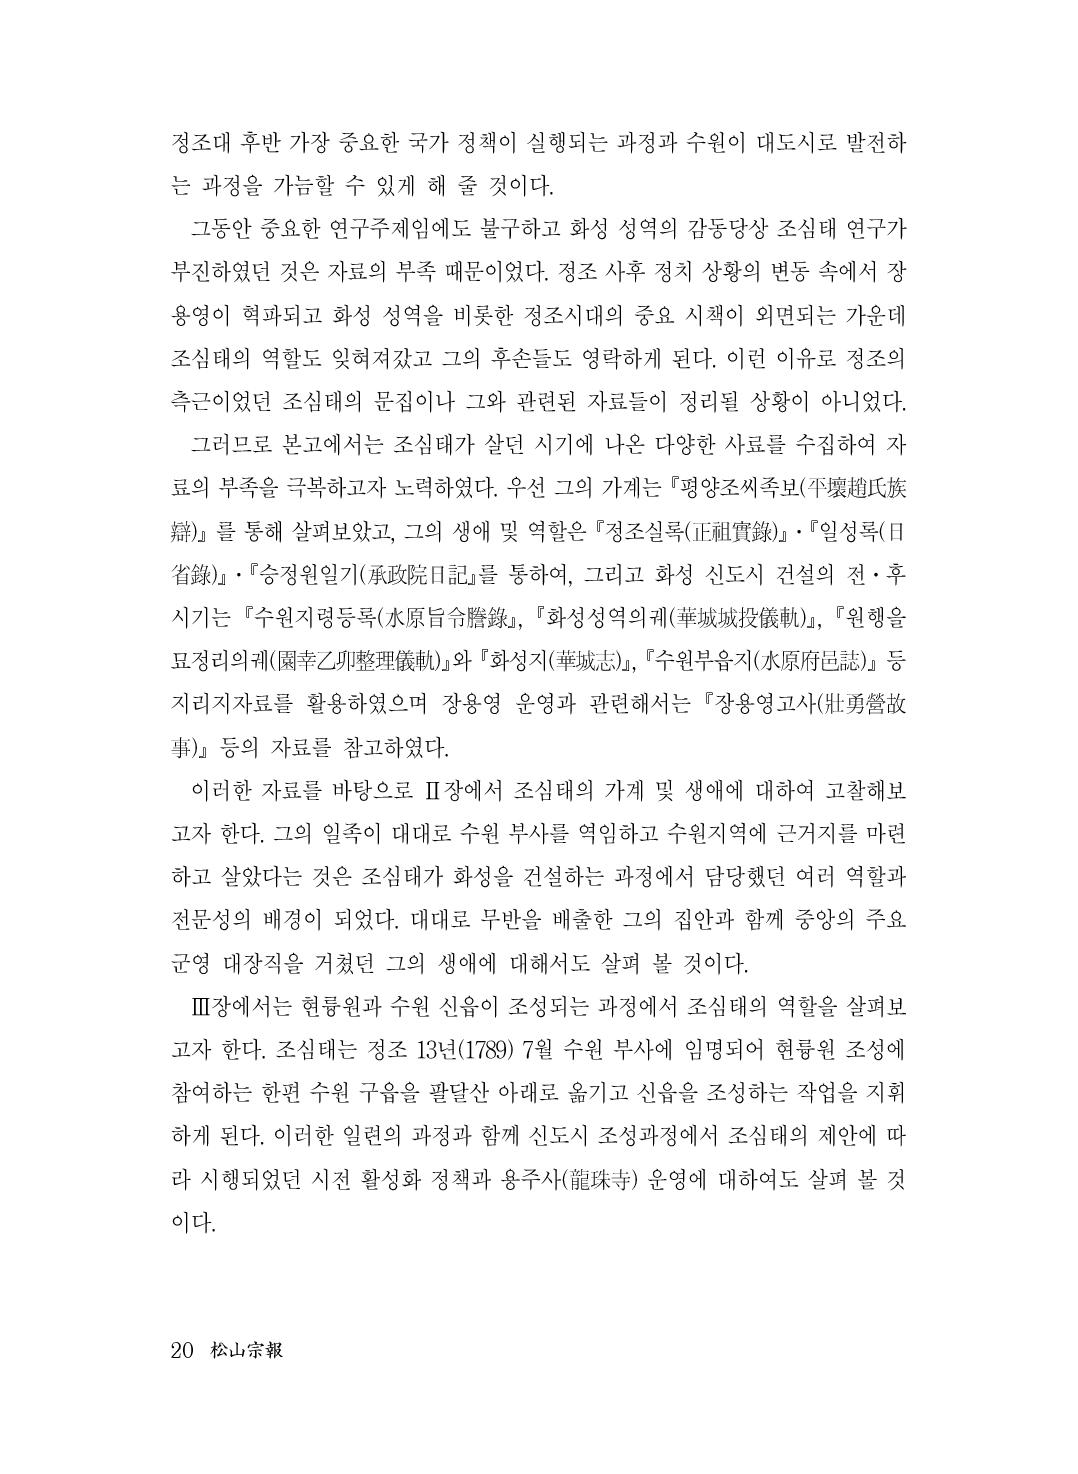 (전체) 송산종보(27호)(최종)_21.jpg